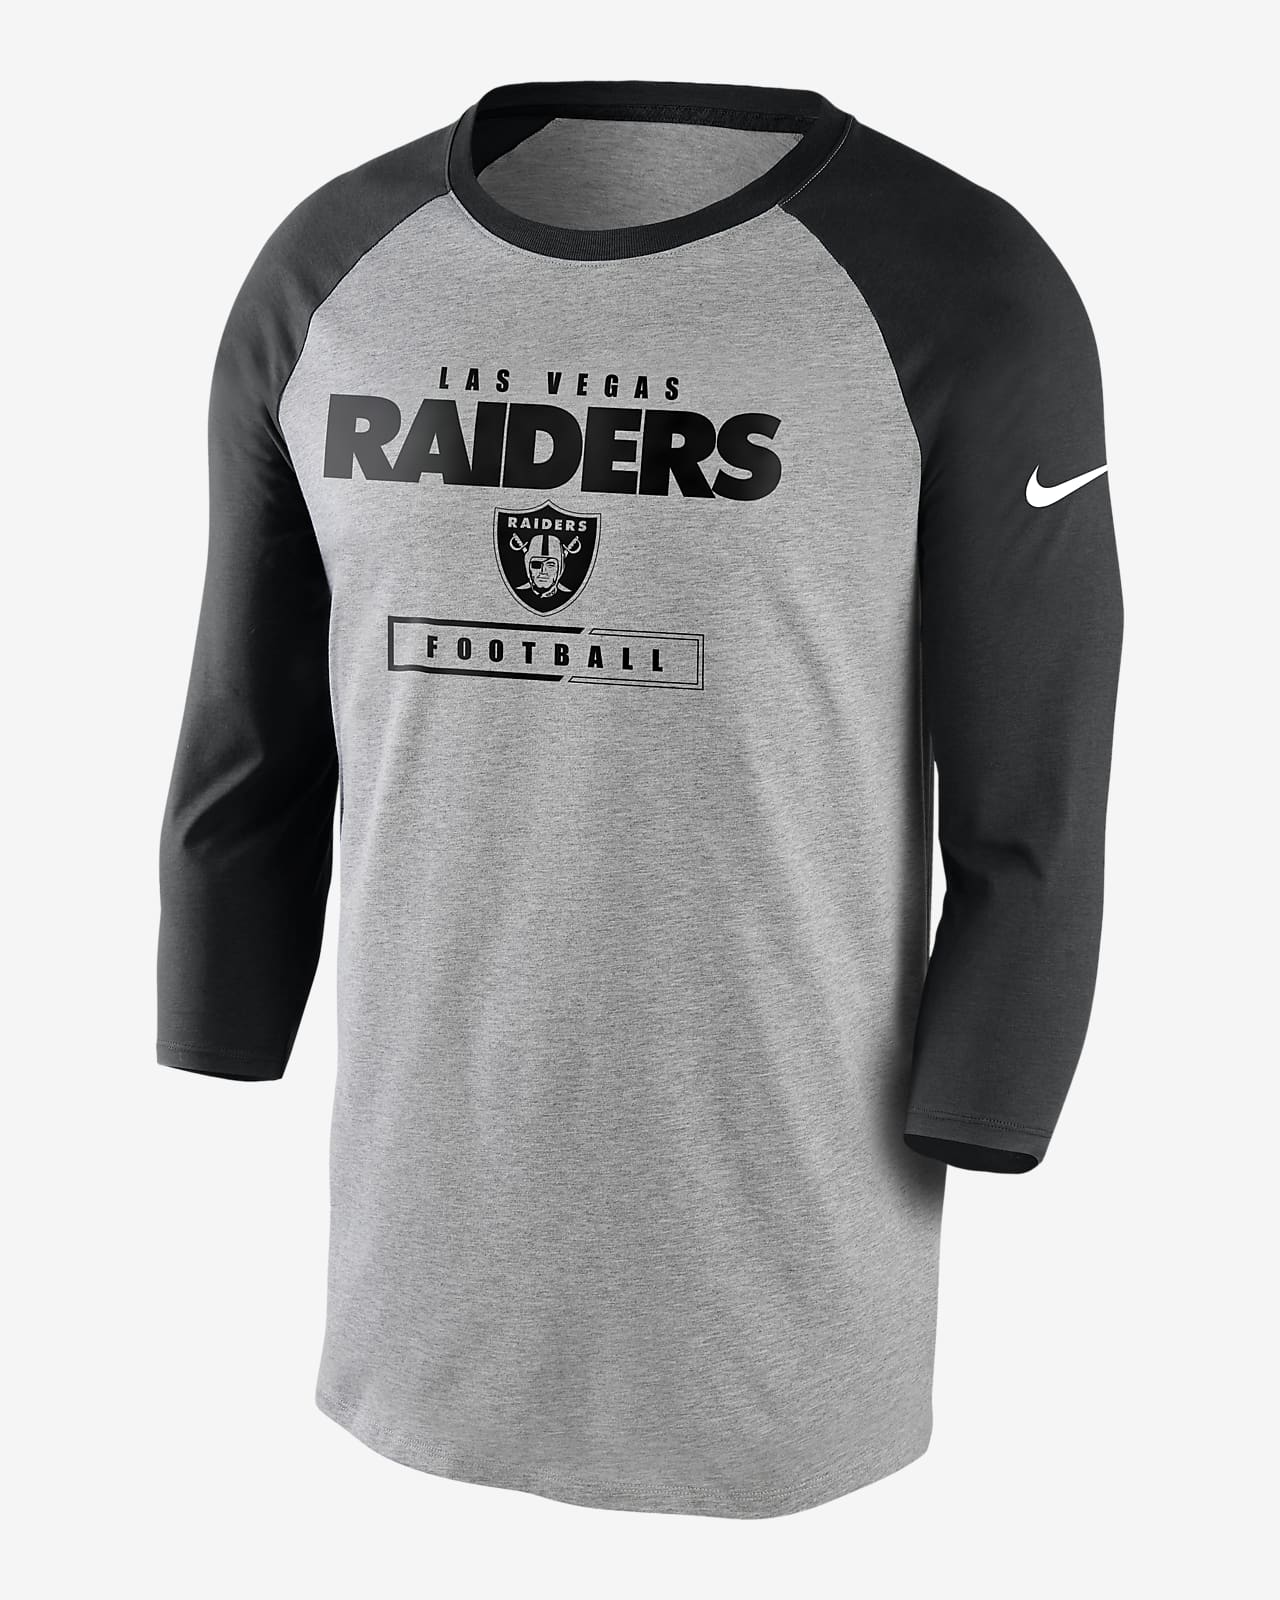 raiders gray jersey